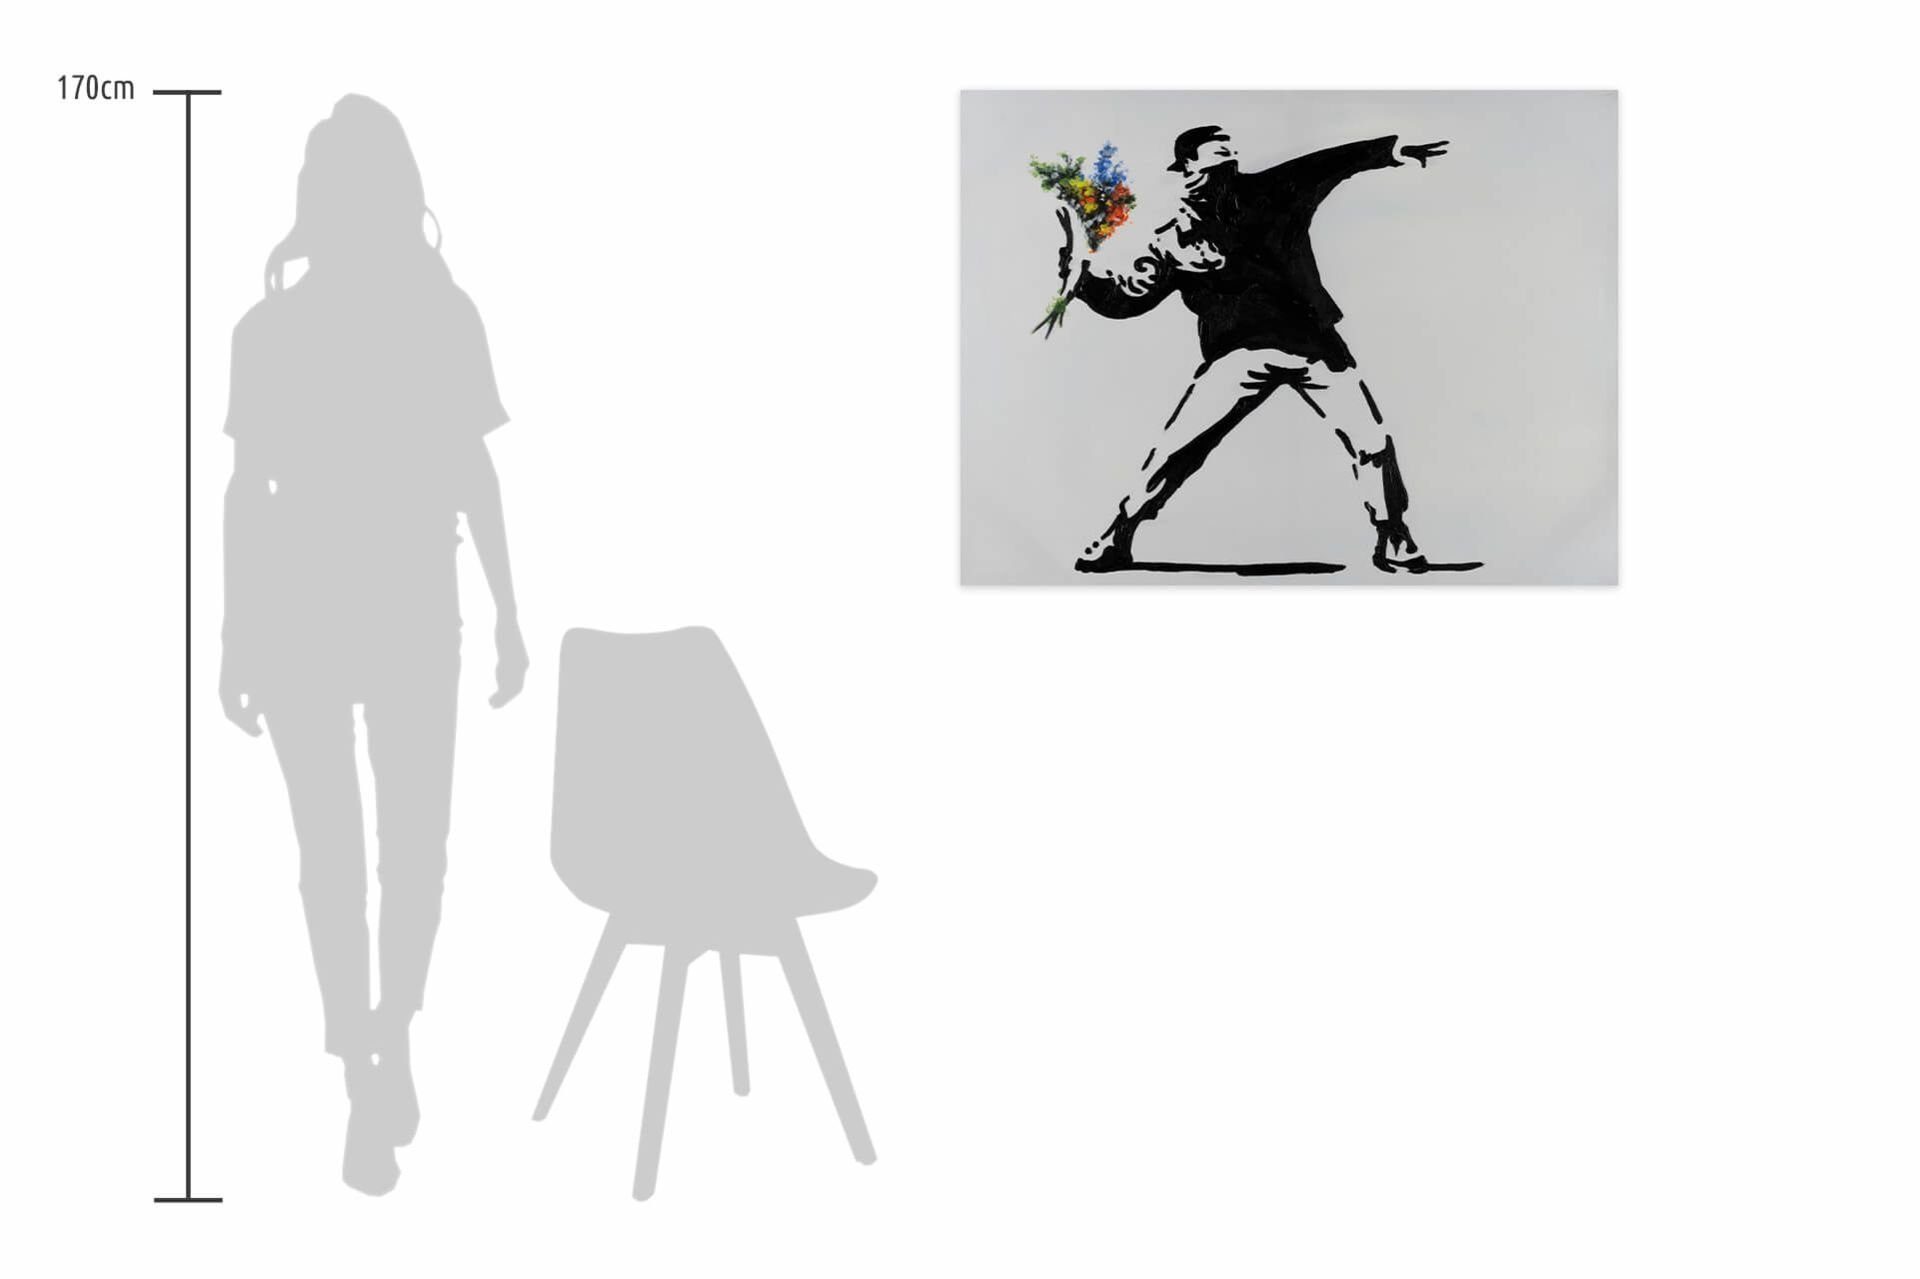 Wandbild HANDGEMALT Wohnzimmer Attack cm, KUNSTLOFT Gemälde Banksy's 100x75 Leinwandbild Flower 100%